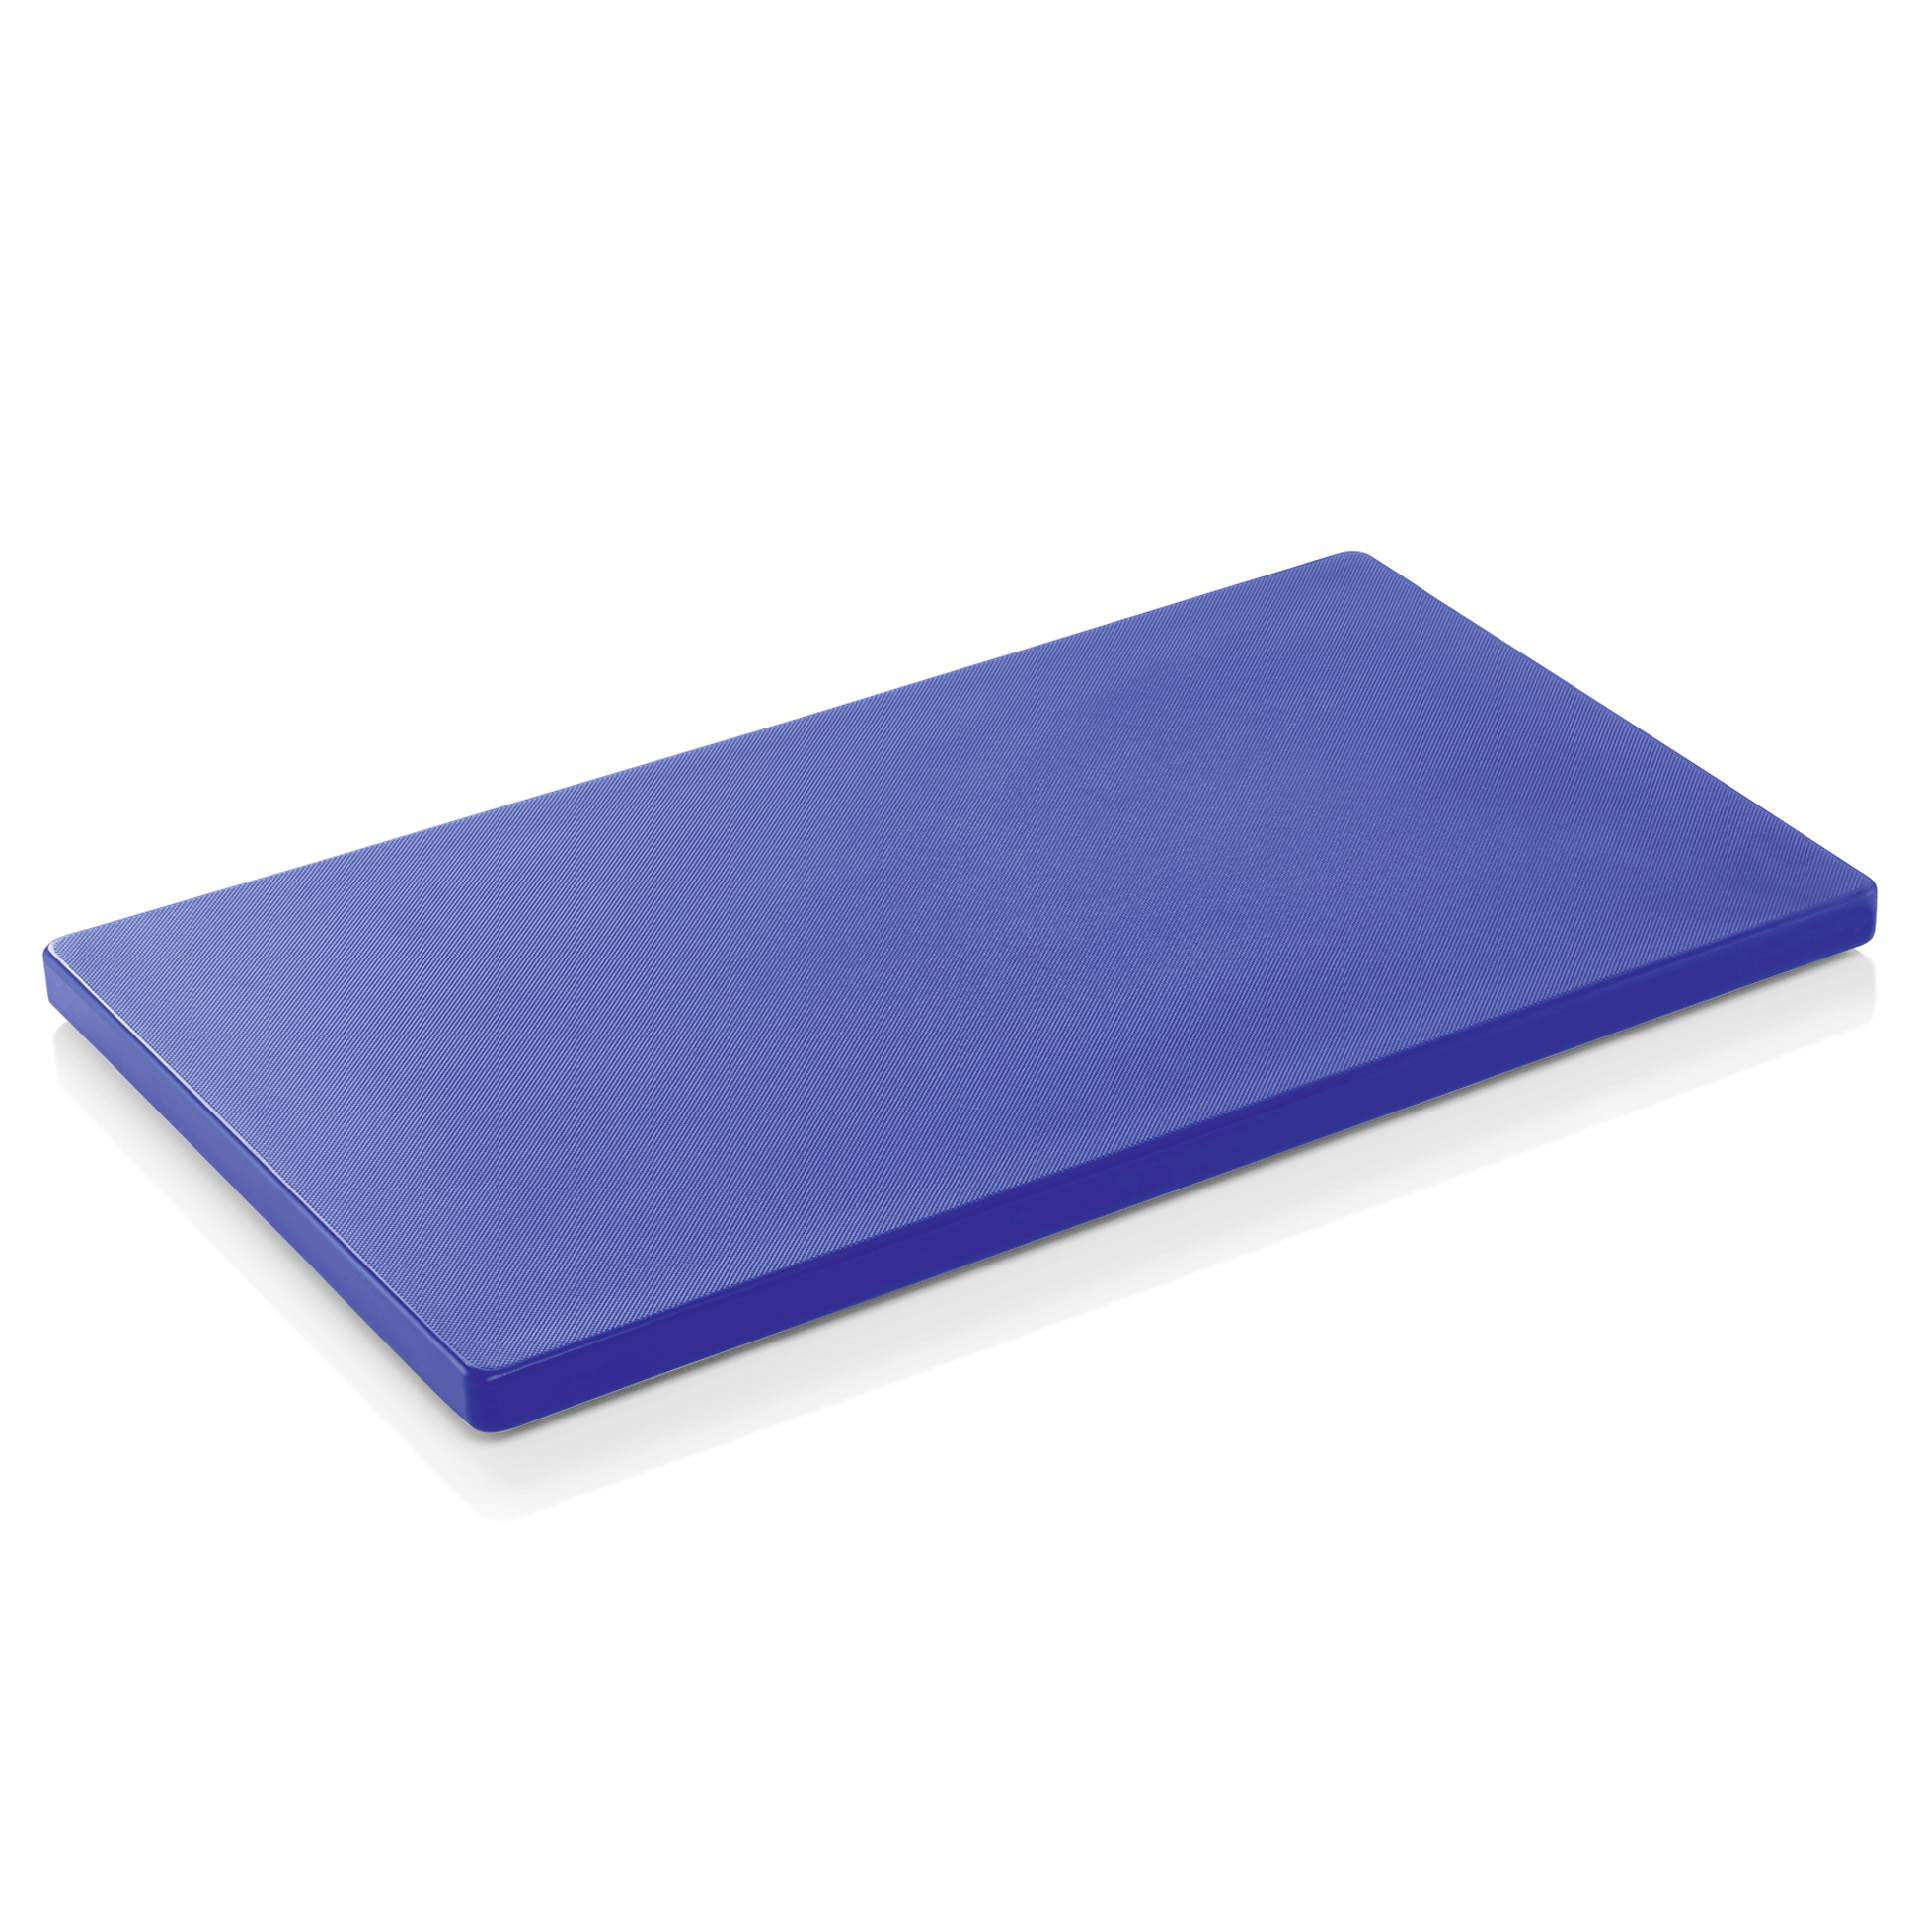 HACCP Schneidbrett - mit rutschhemmenden Füßen - blau - Abm. 60 x 40 x 2 cm - Polyethylen